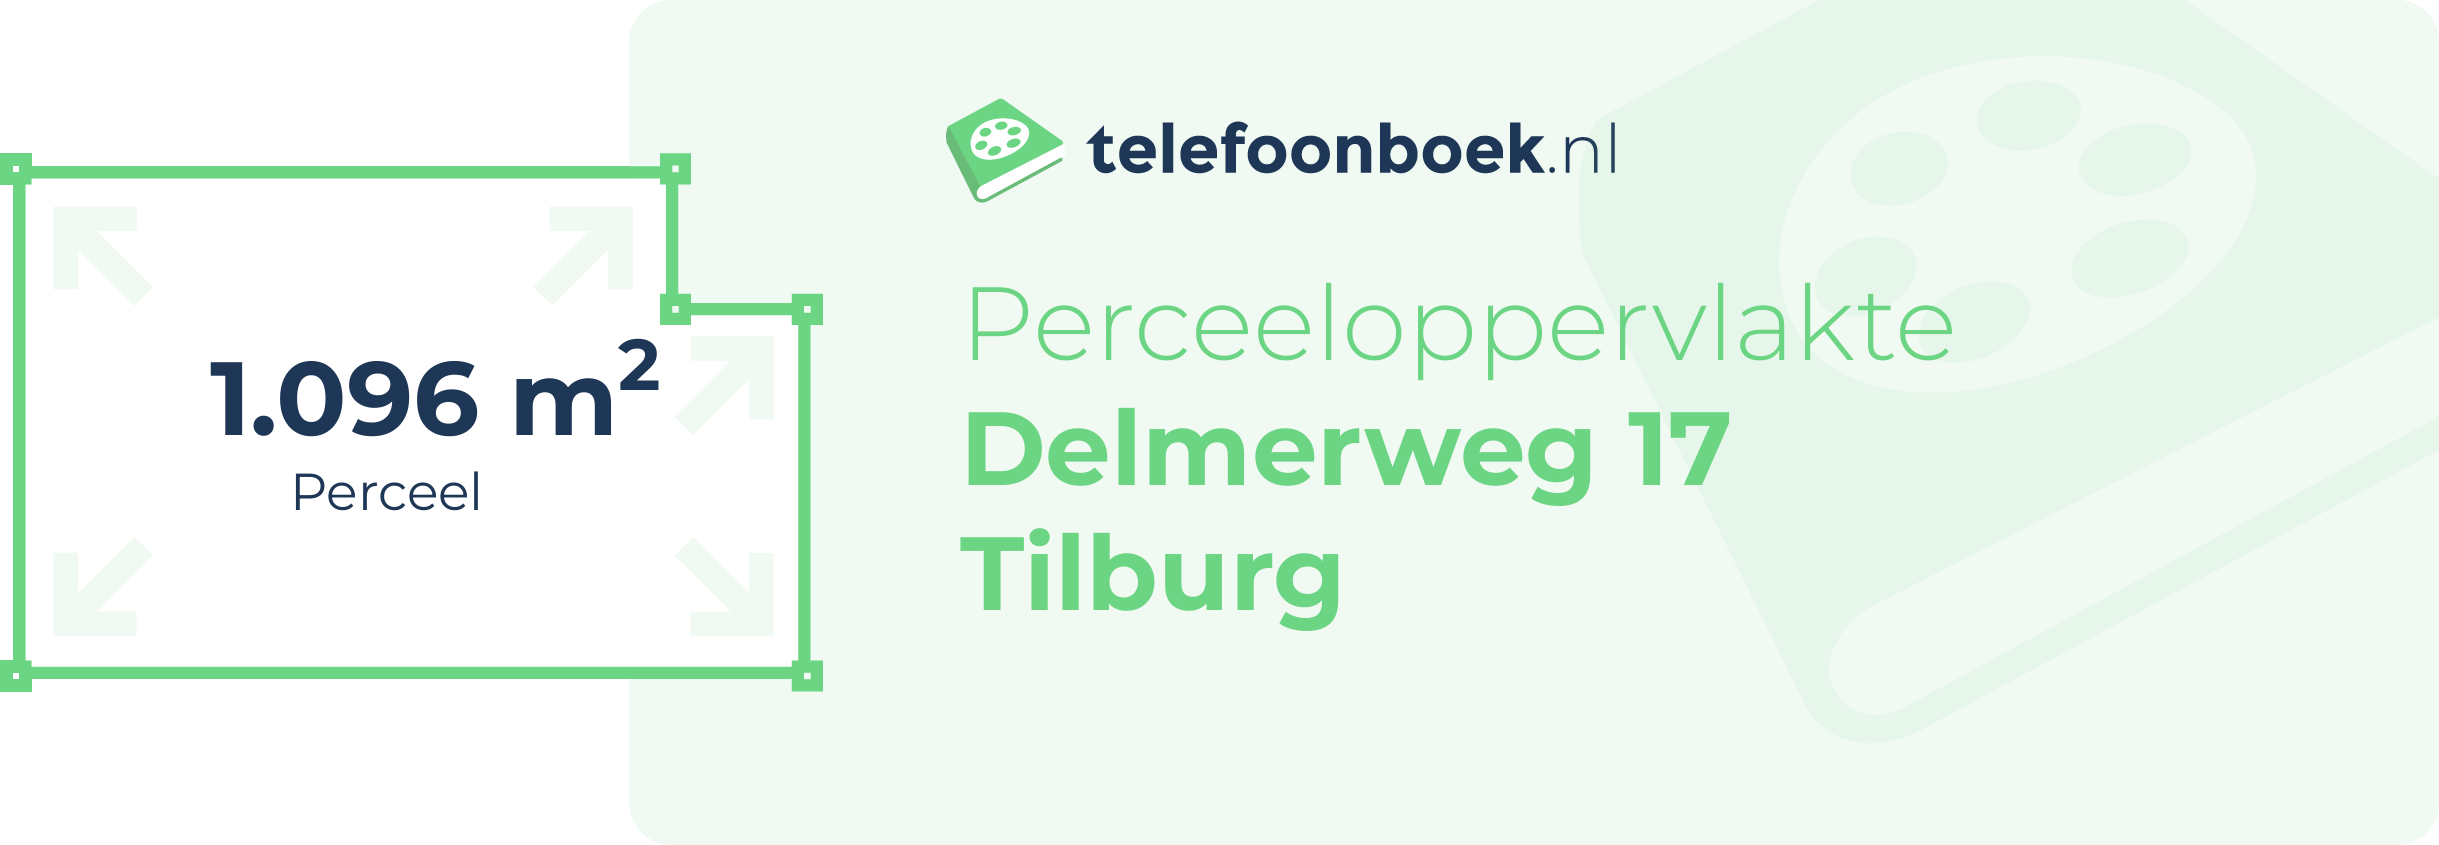 Perceeloppervlakte Delmerweg 17 Tilburg